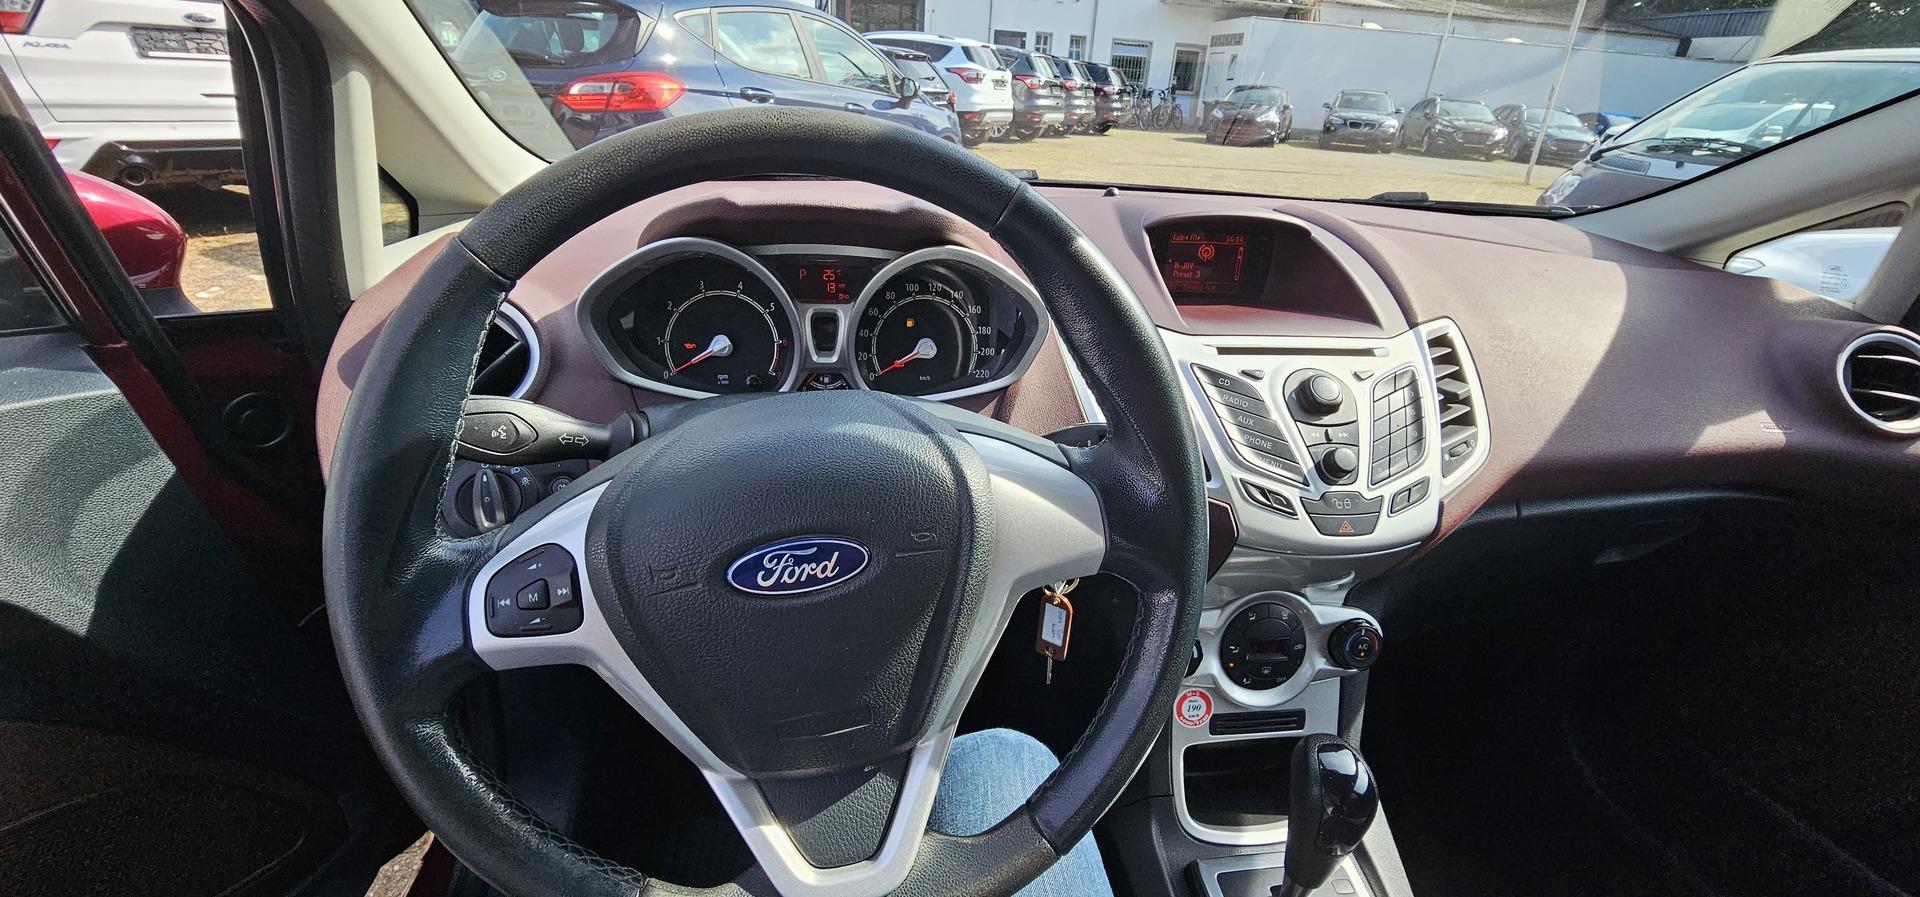 Ford Fiesta 1.4 Autom. Titanium Dachspoiler auto. Klima Alufelgen - günstig  kaufen